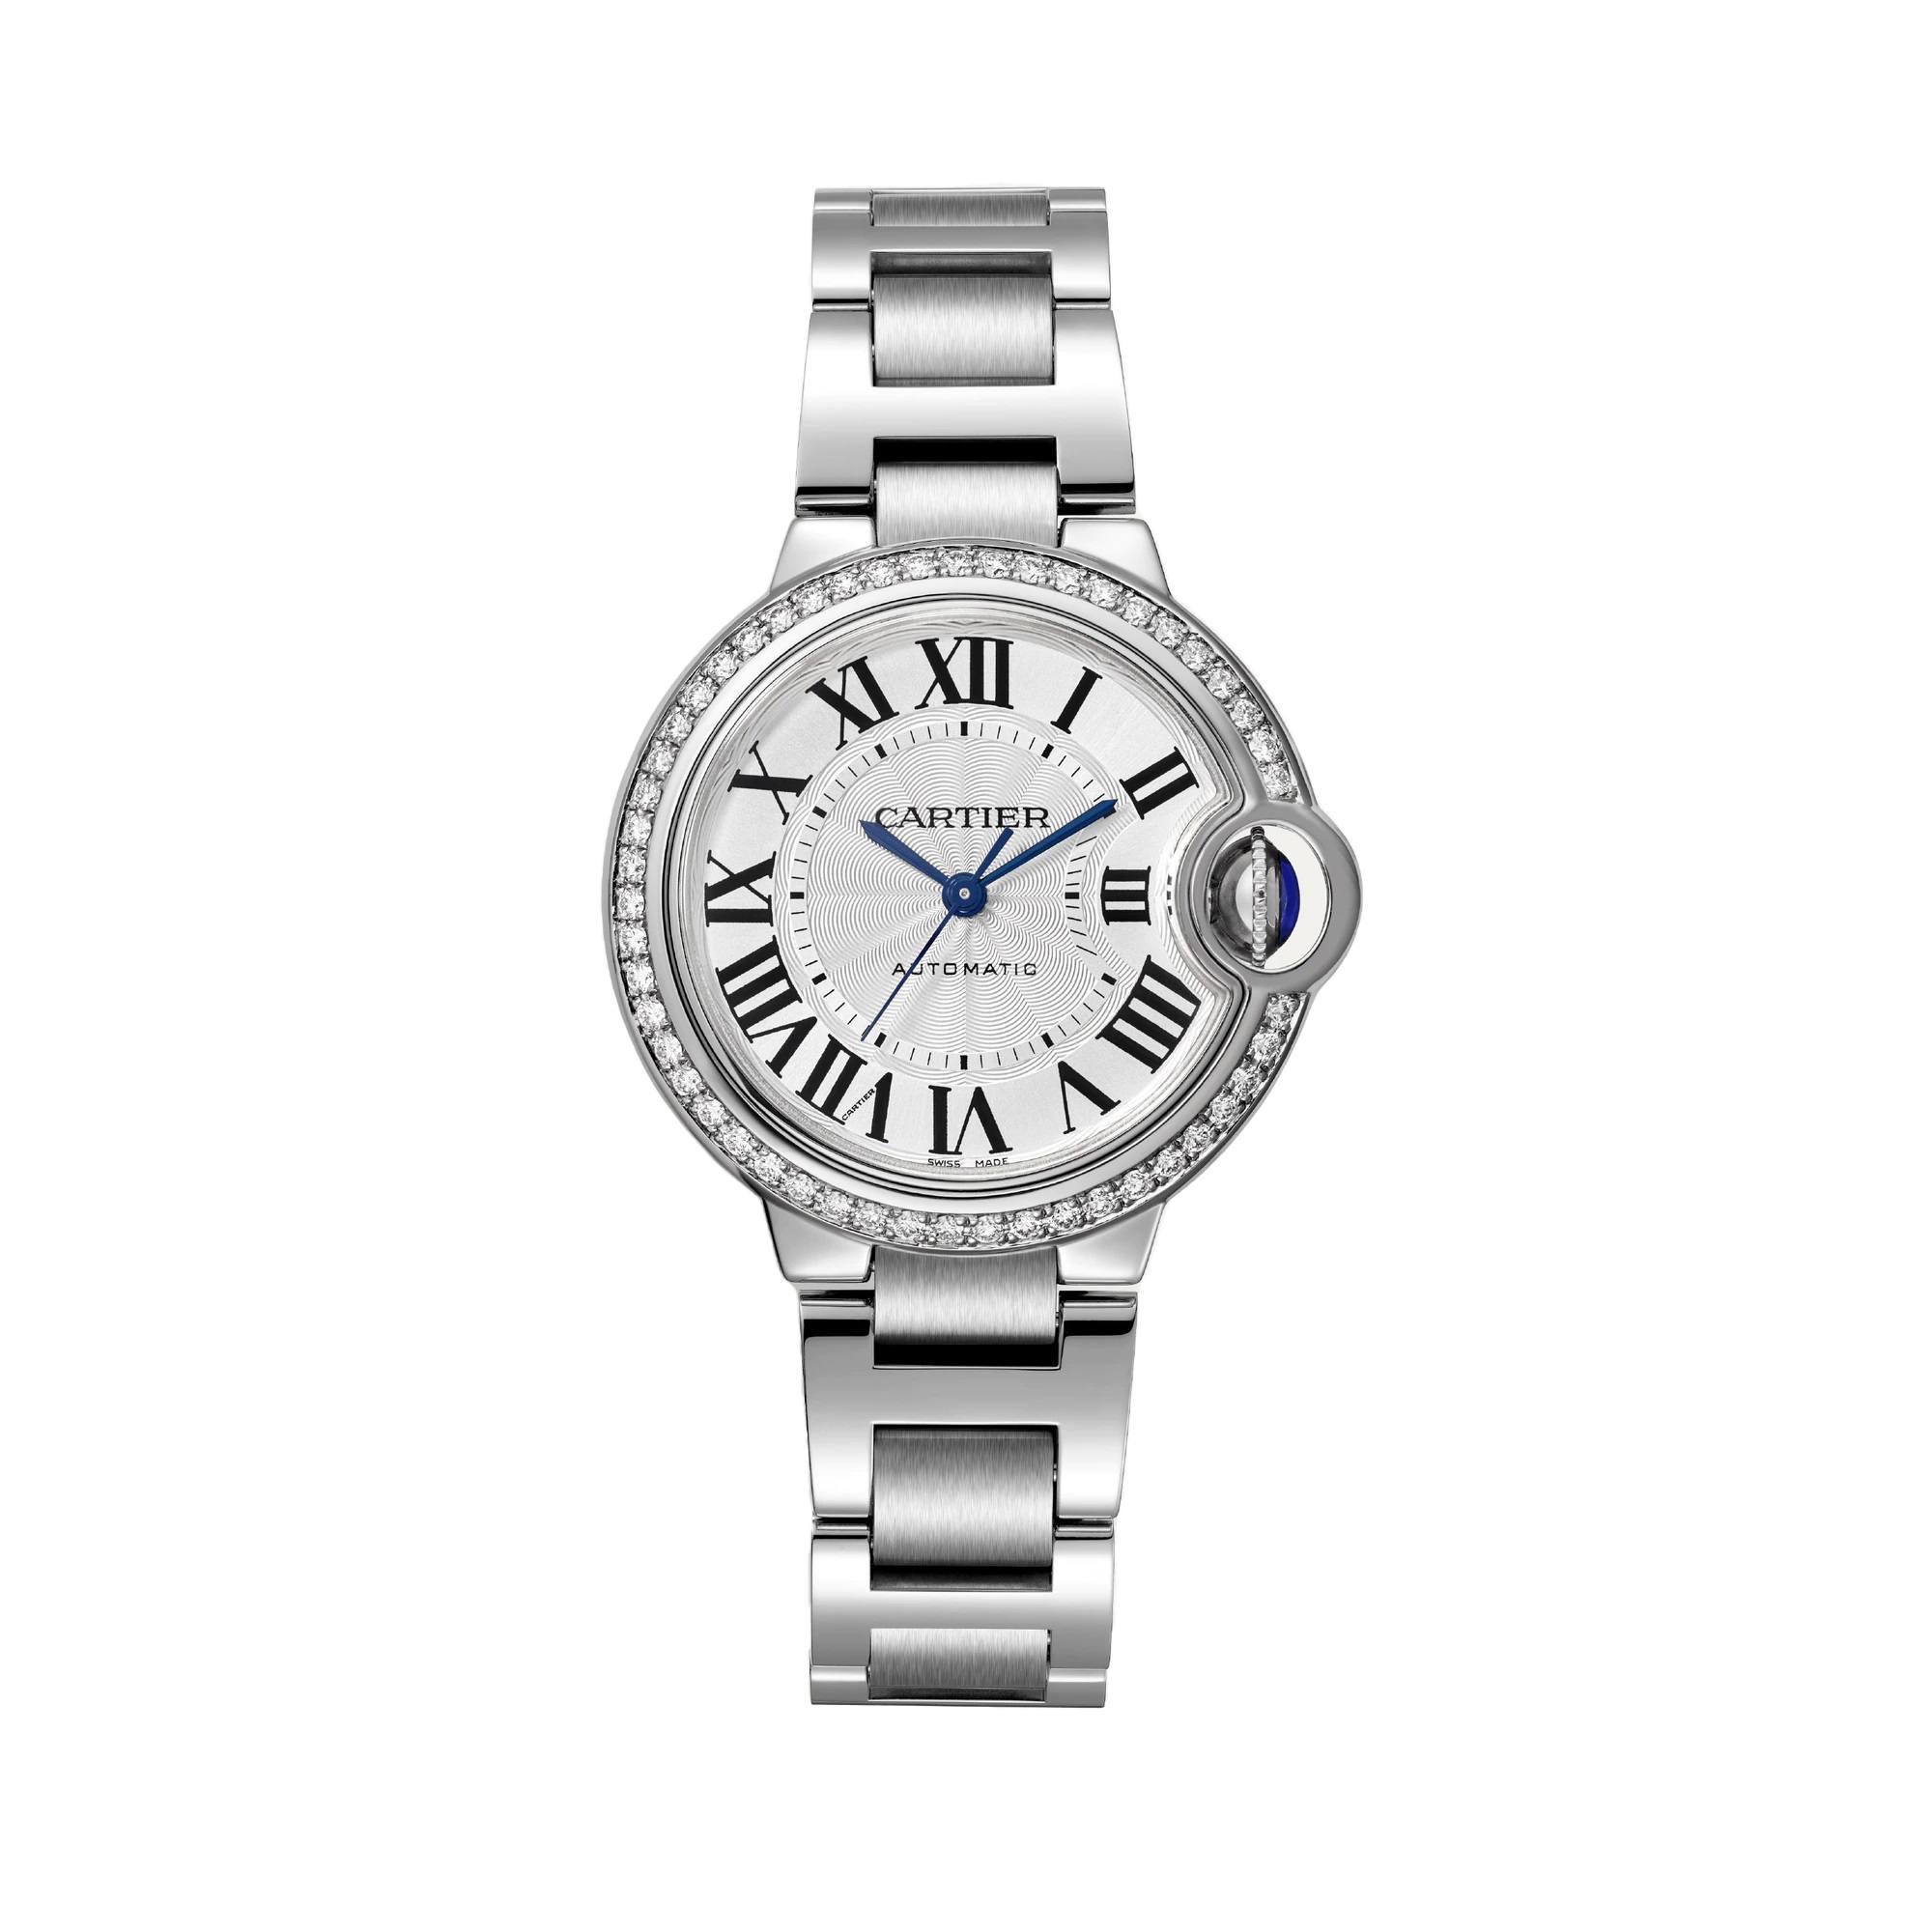 Ballon Bleu de Cartier Watch, Silver Guilloche Dial with Diamonds, 33mm 1